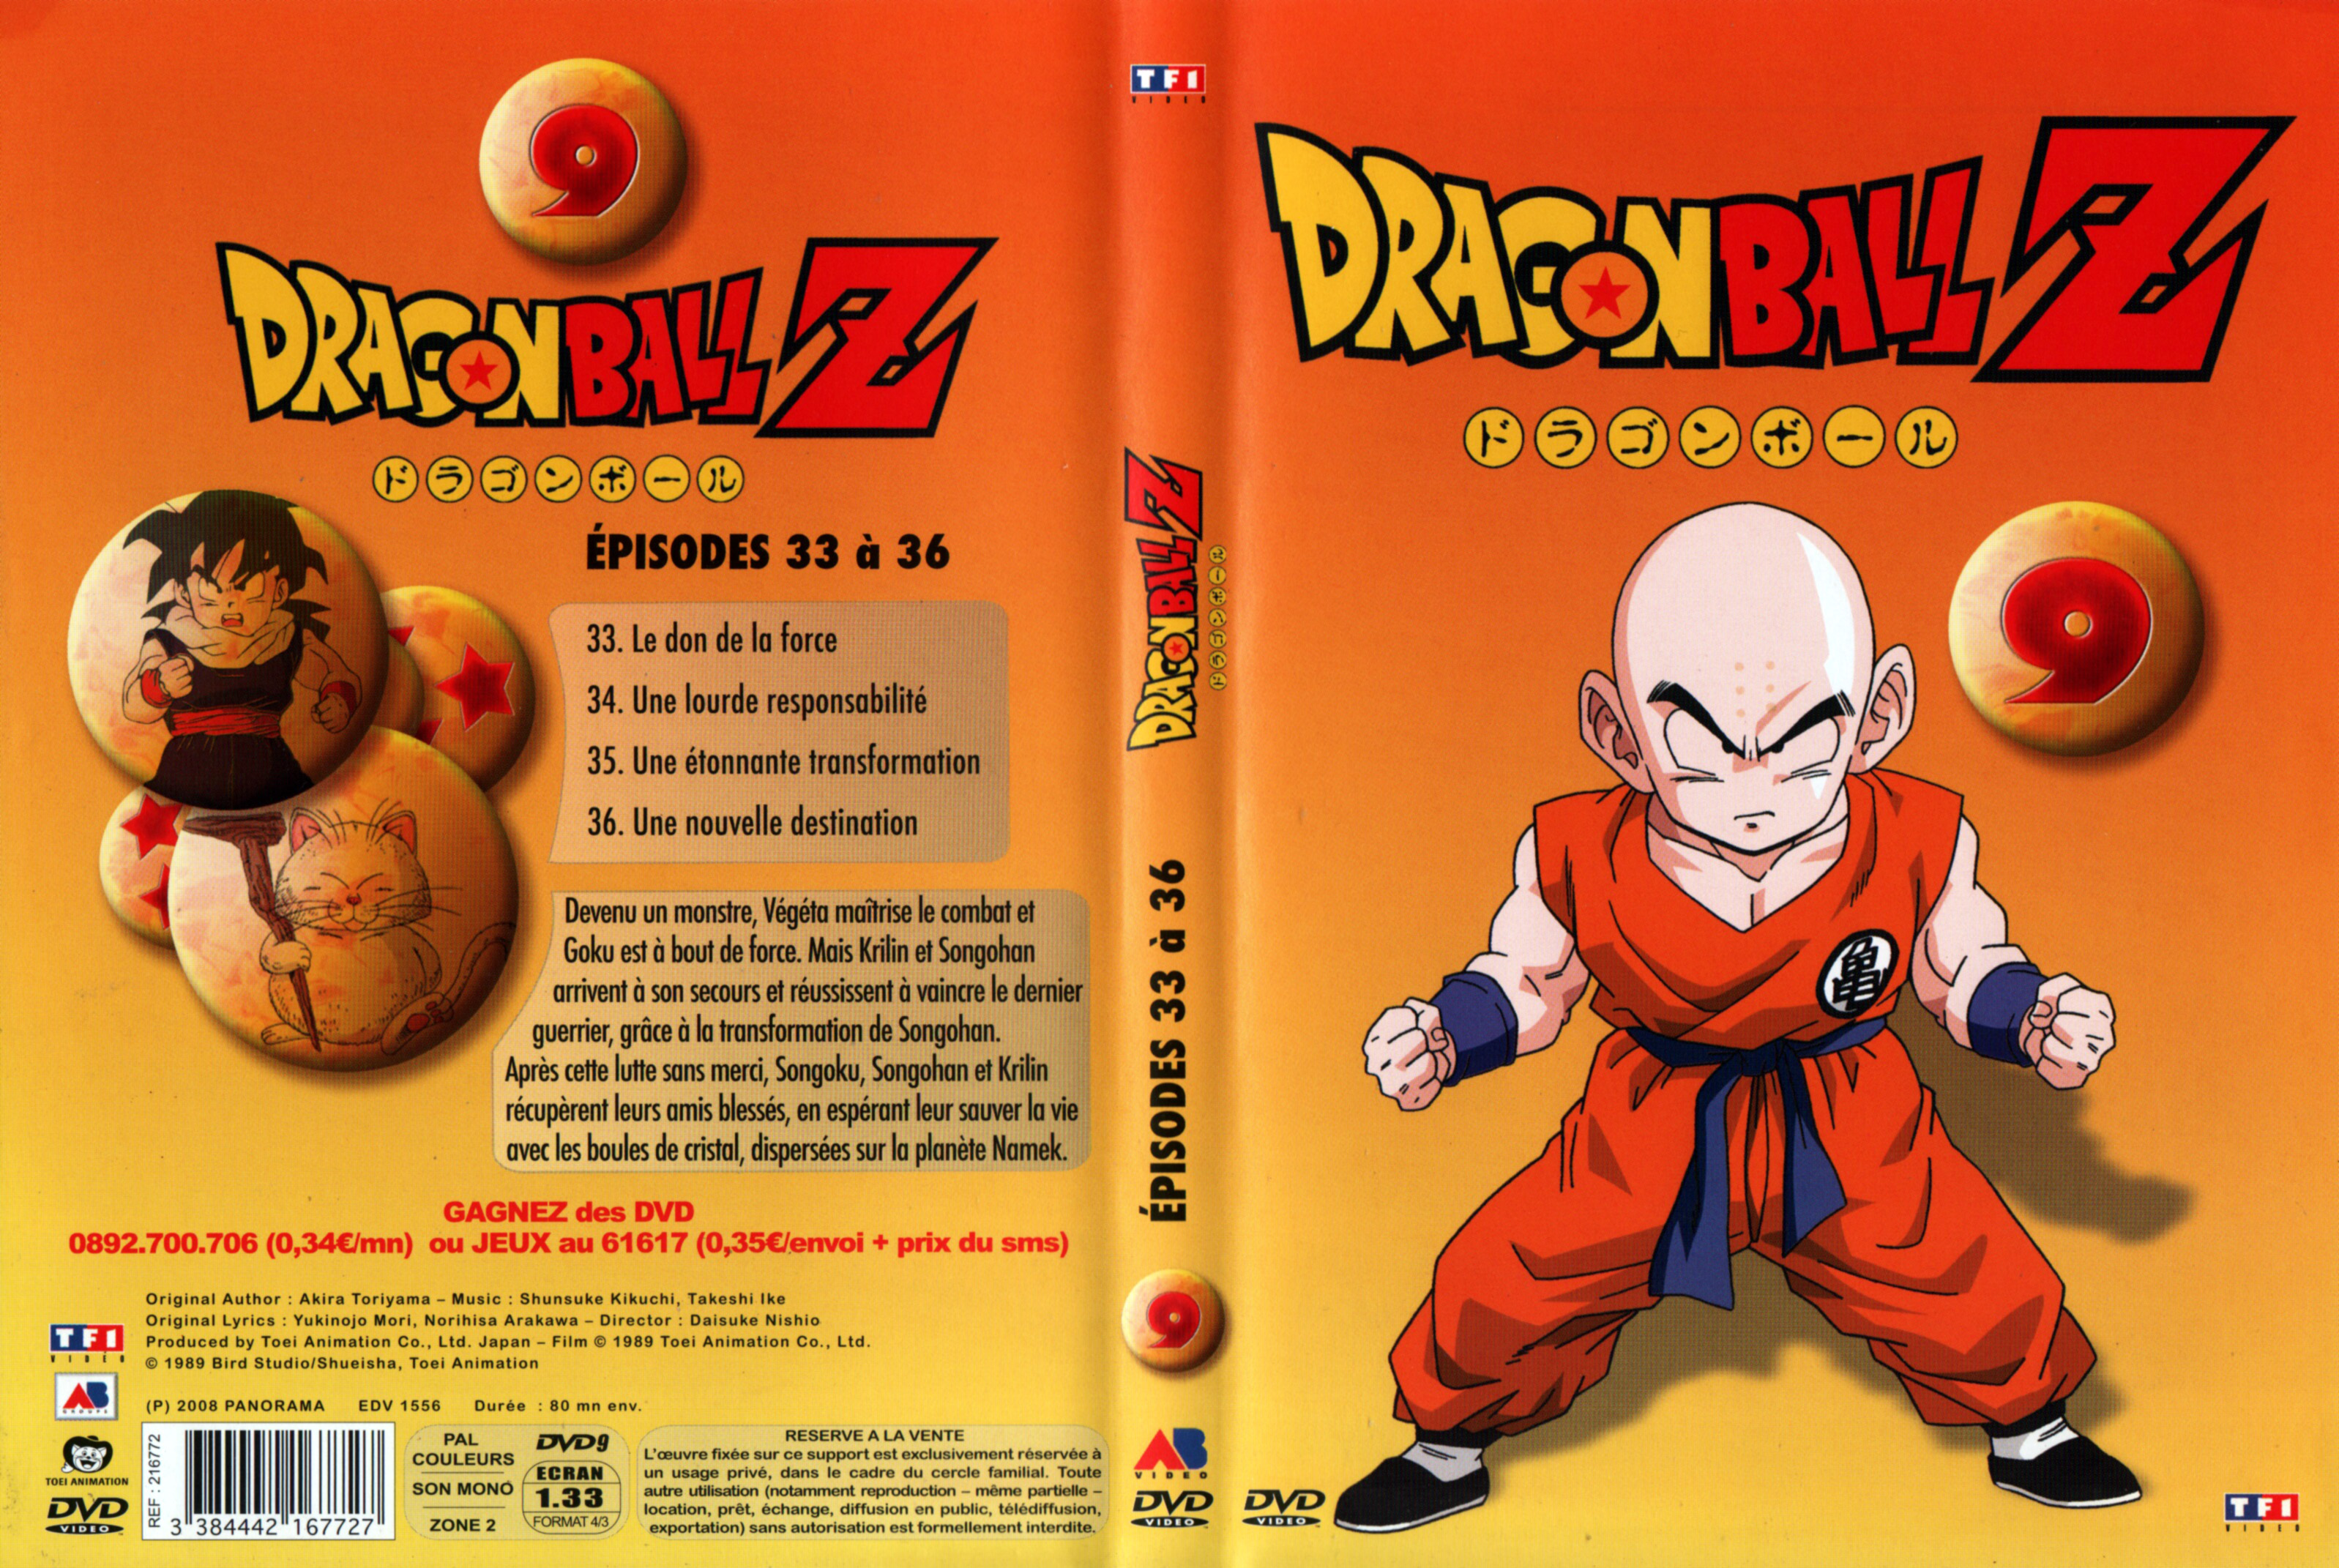 Jaquette DVD Dragon Ball Z vol 09 v2